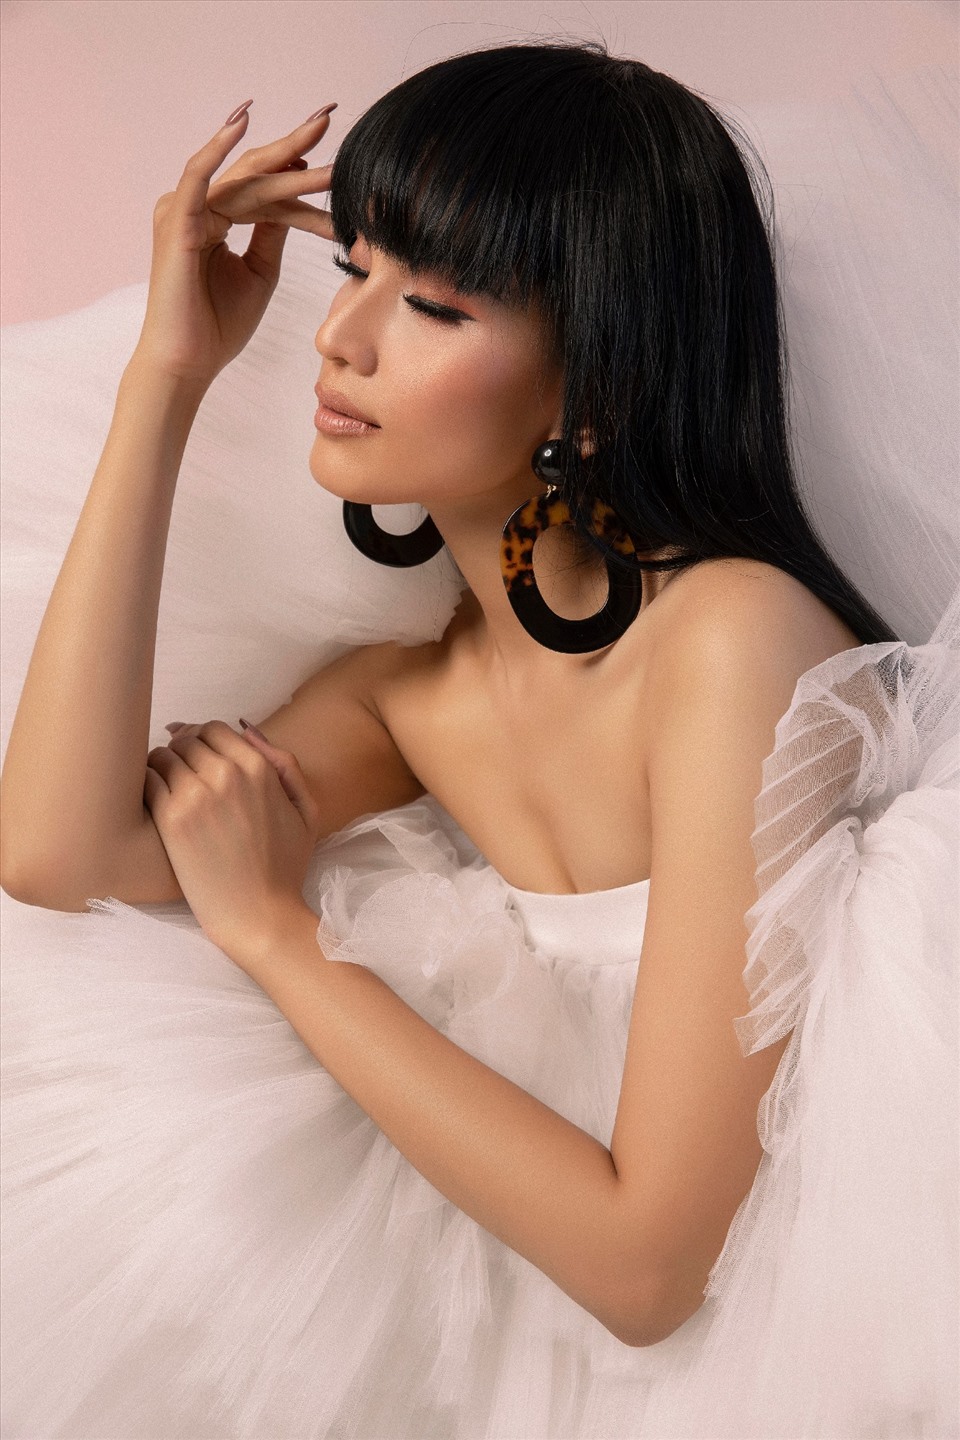 Người mẫu sinh năm 1988 còn là một trong những gương mặt thời trang hàng đầu Việt Nam với hơn 10 năm làm nghề người mẫu và xuất hiện dầy đặc trên sàn diễn cũng như các tạp chí thời trang danh giá.